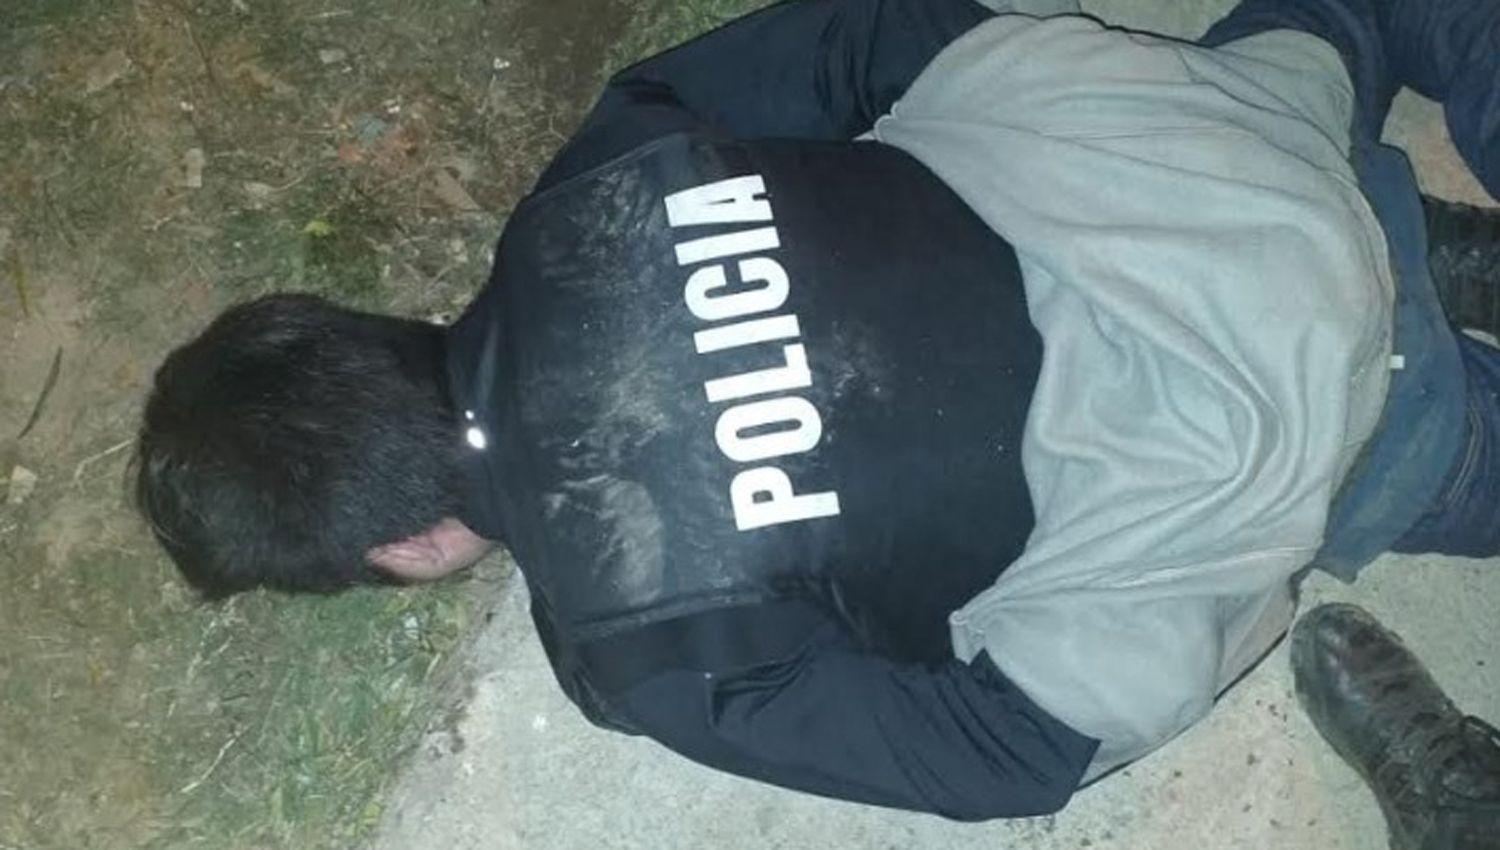 Villalba tenía puesto un chaleco antibala de la Policía y estaba fuertemente armado